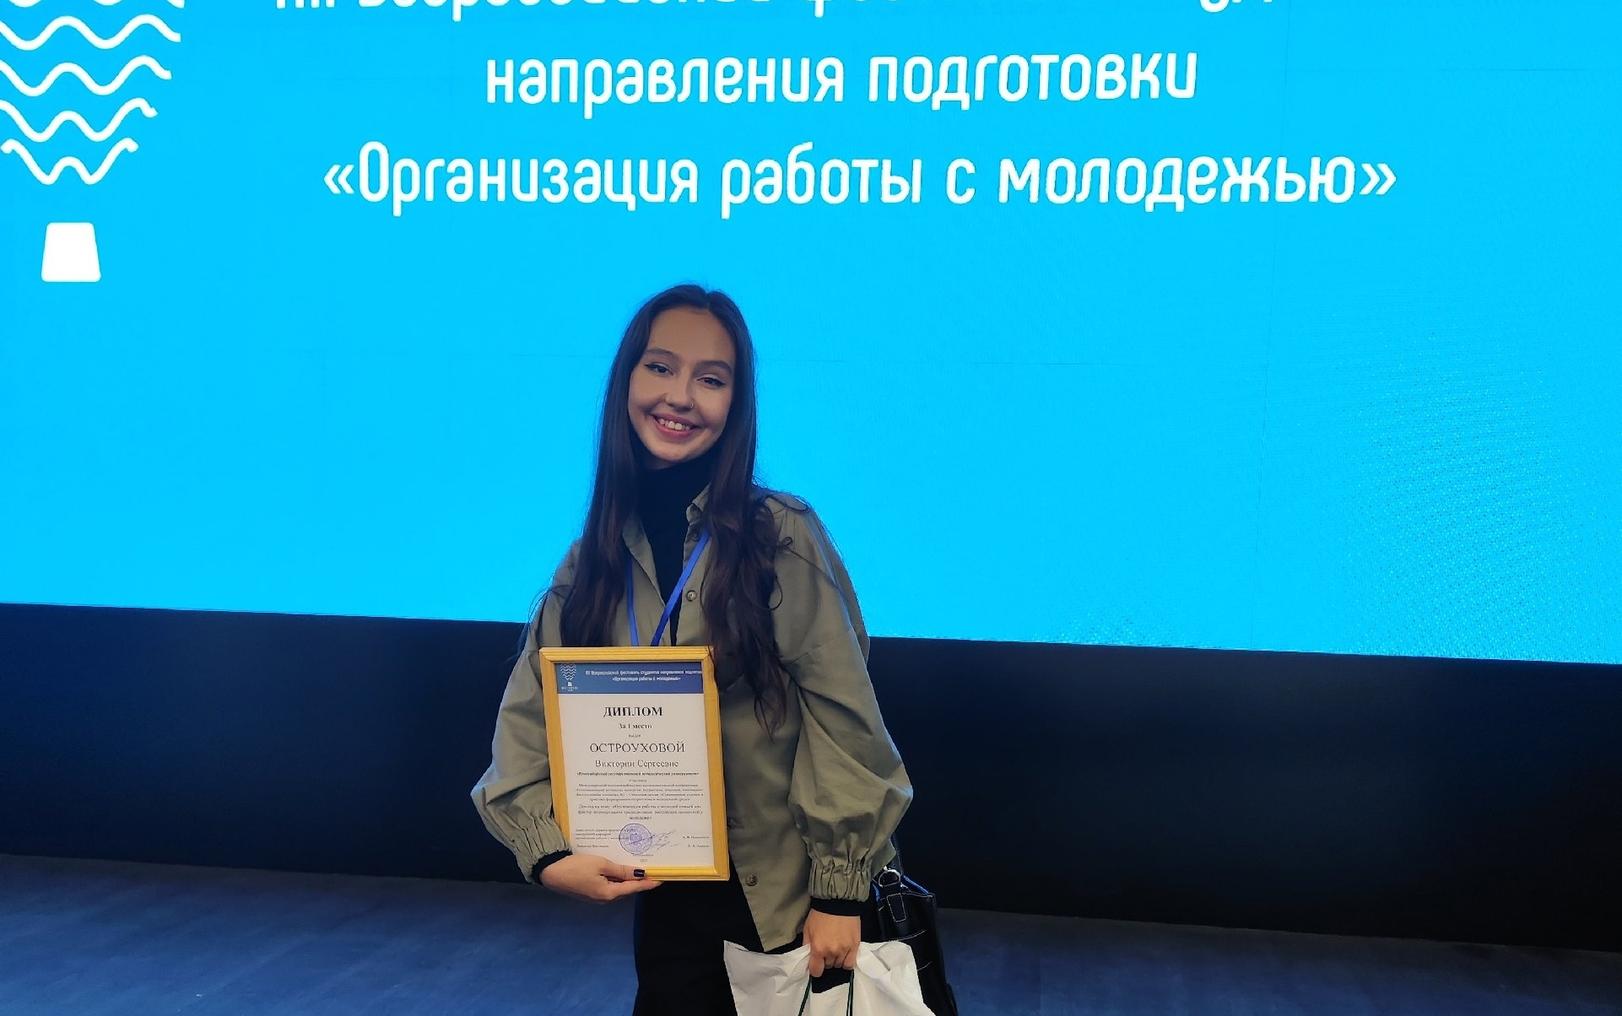 ФОТО к новости: Студентка НГПУ выиграла грант на реализацию поэтического проекта